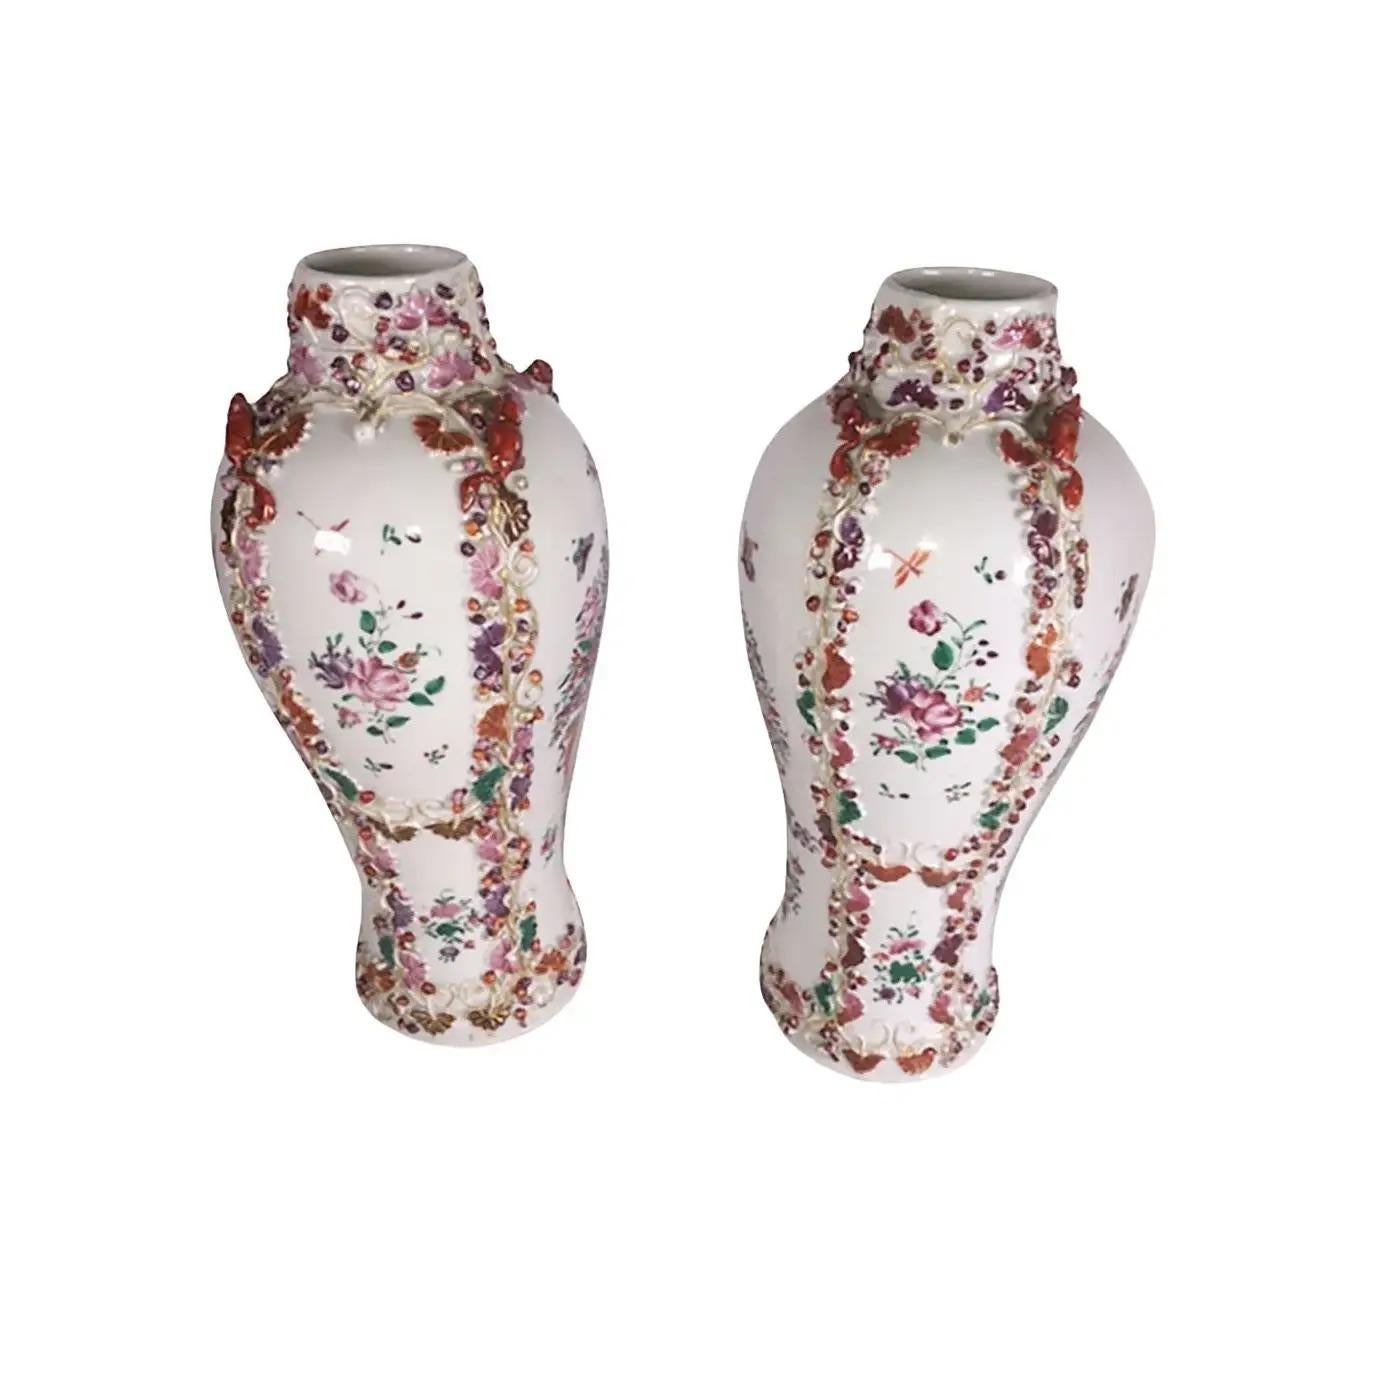 Ein Paar chinesische Export-Porzellanvasen mit Mäusen, die den Deckel umgeben. Vasen auch mit einer Urne, Blumen und Schmetterlingen. CIRCA-1800.